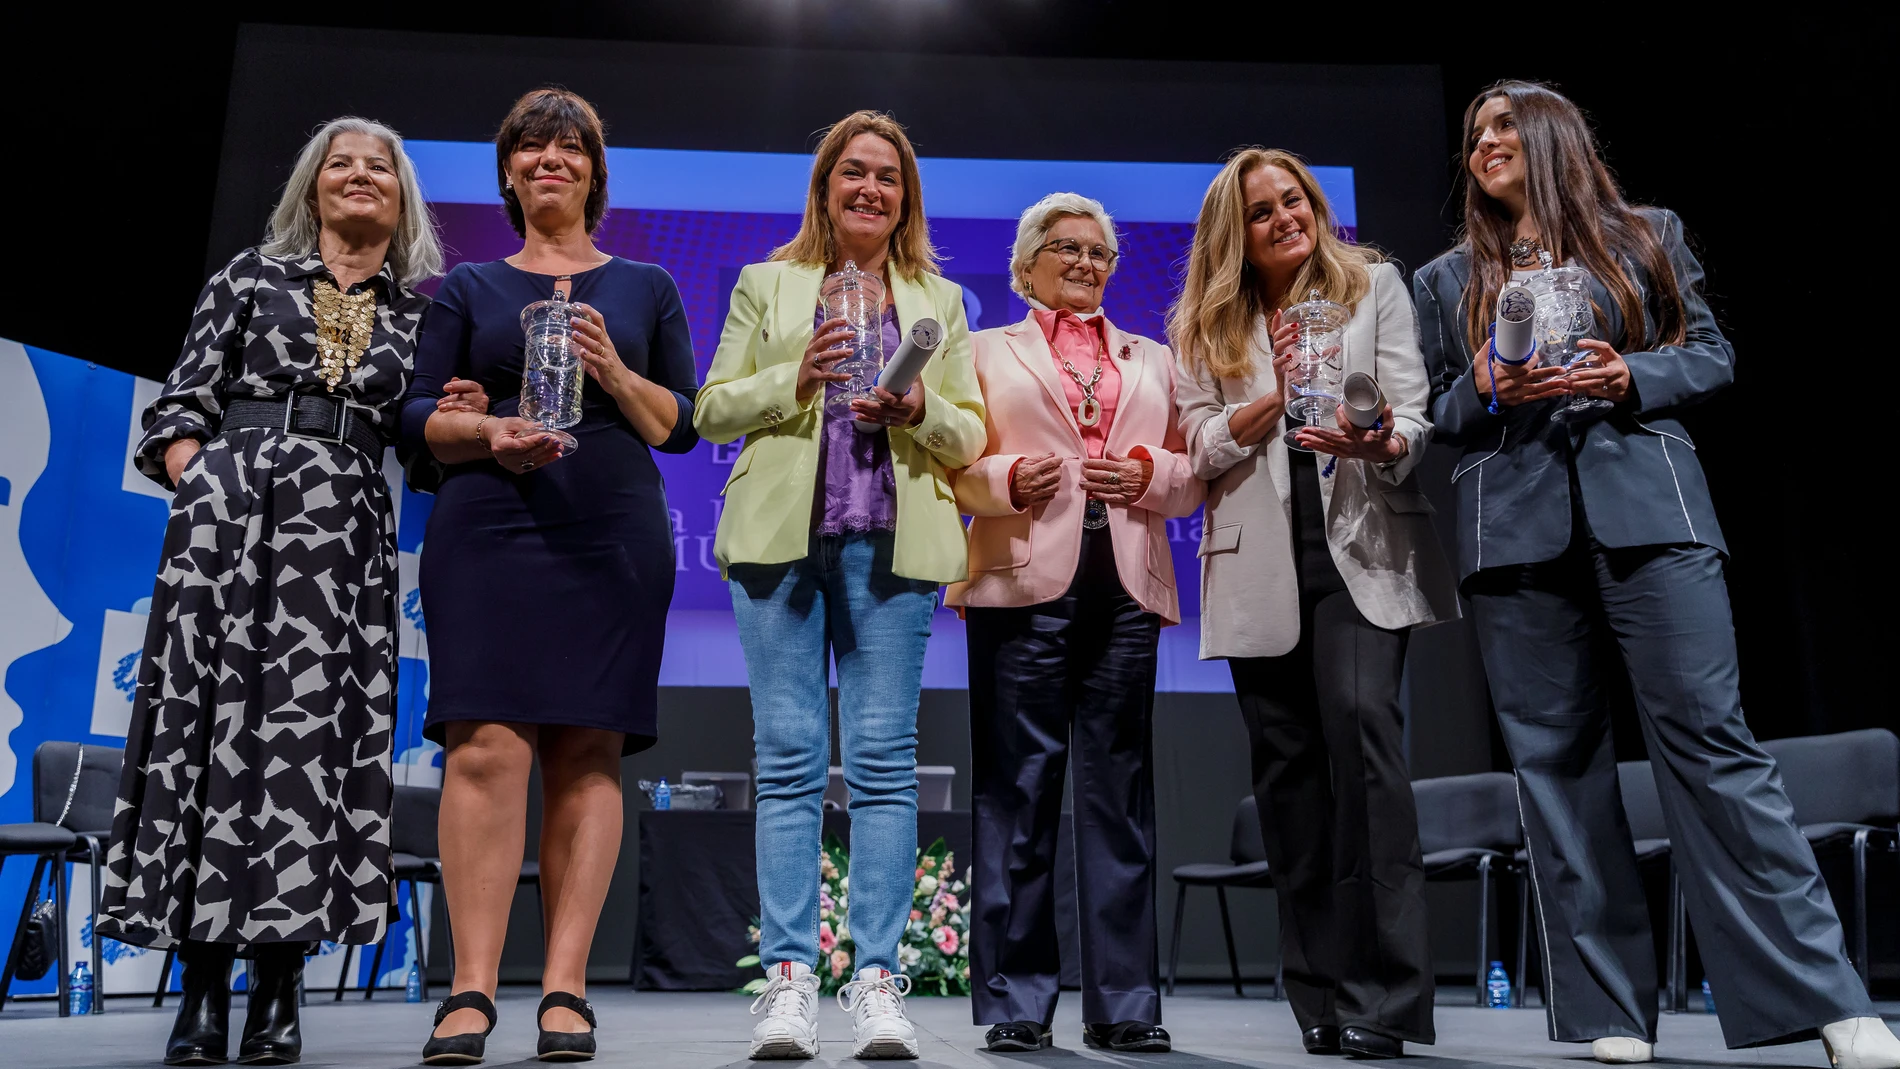 La presidenta de la Federación Nacional de la Mujer Rural (Femur), Juana Borrego, entrega los Premios Mujer 2022 a: Carmen Morales, Ruth Lorenzo, Toñi Moreno y Rocío Olmos